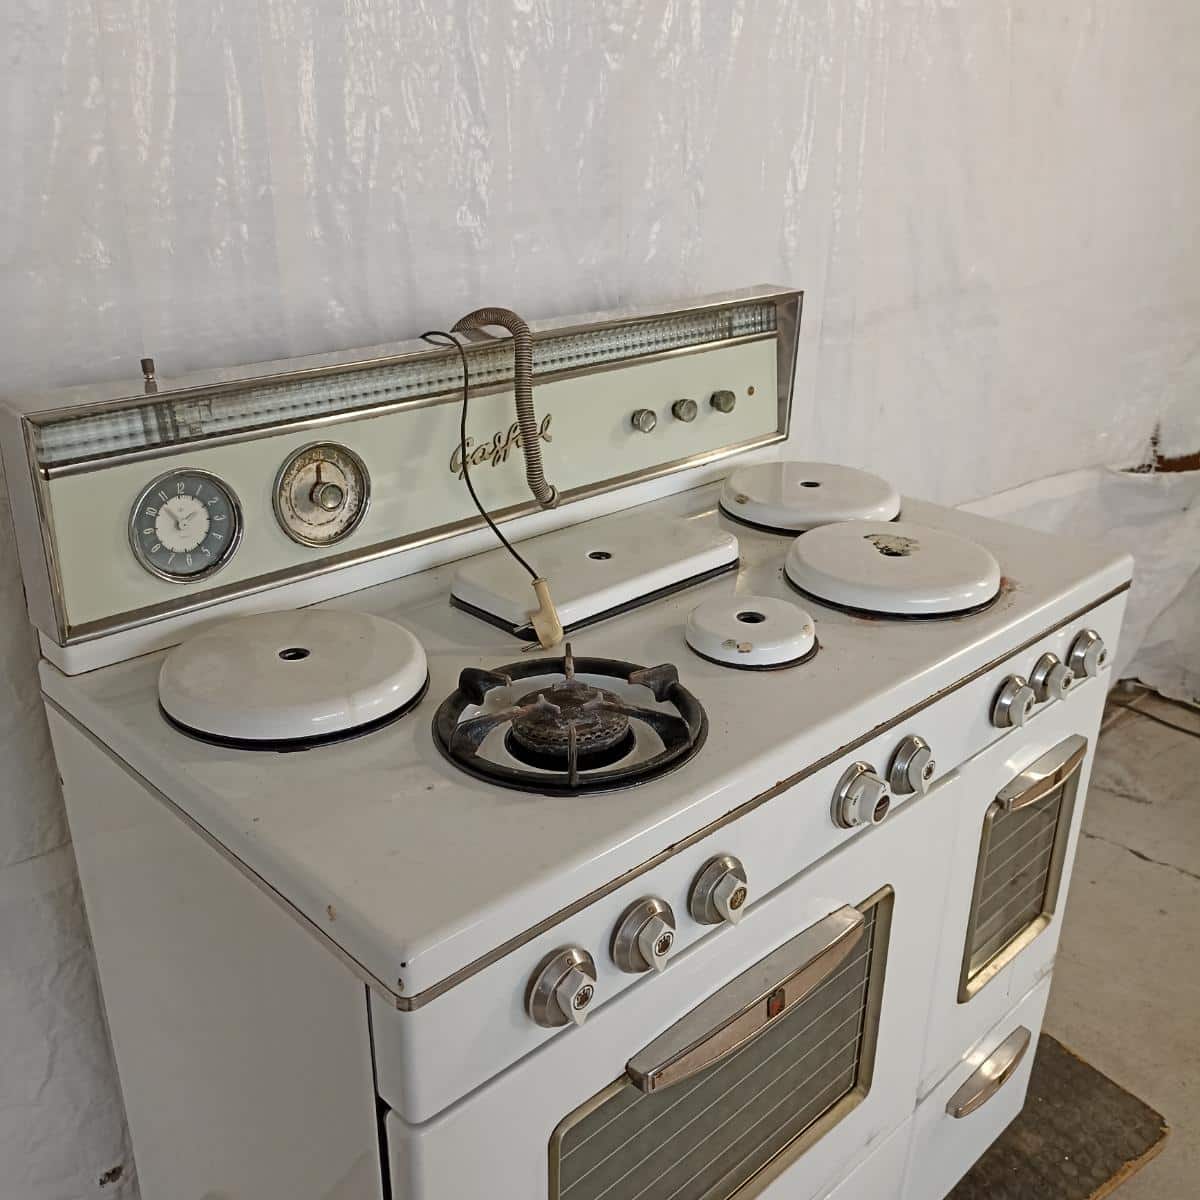 Cucina Gasfire anni 50 Elettrodomestici